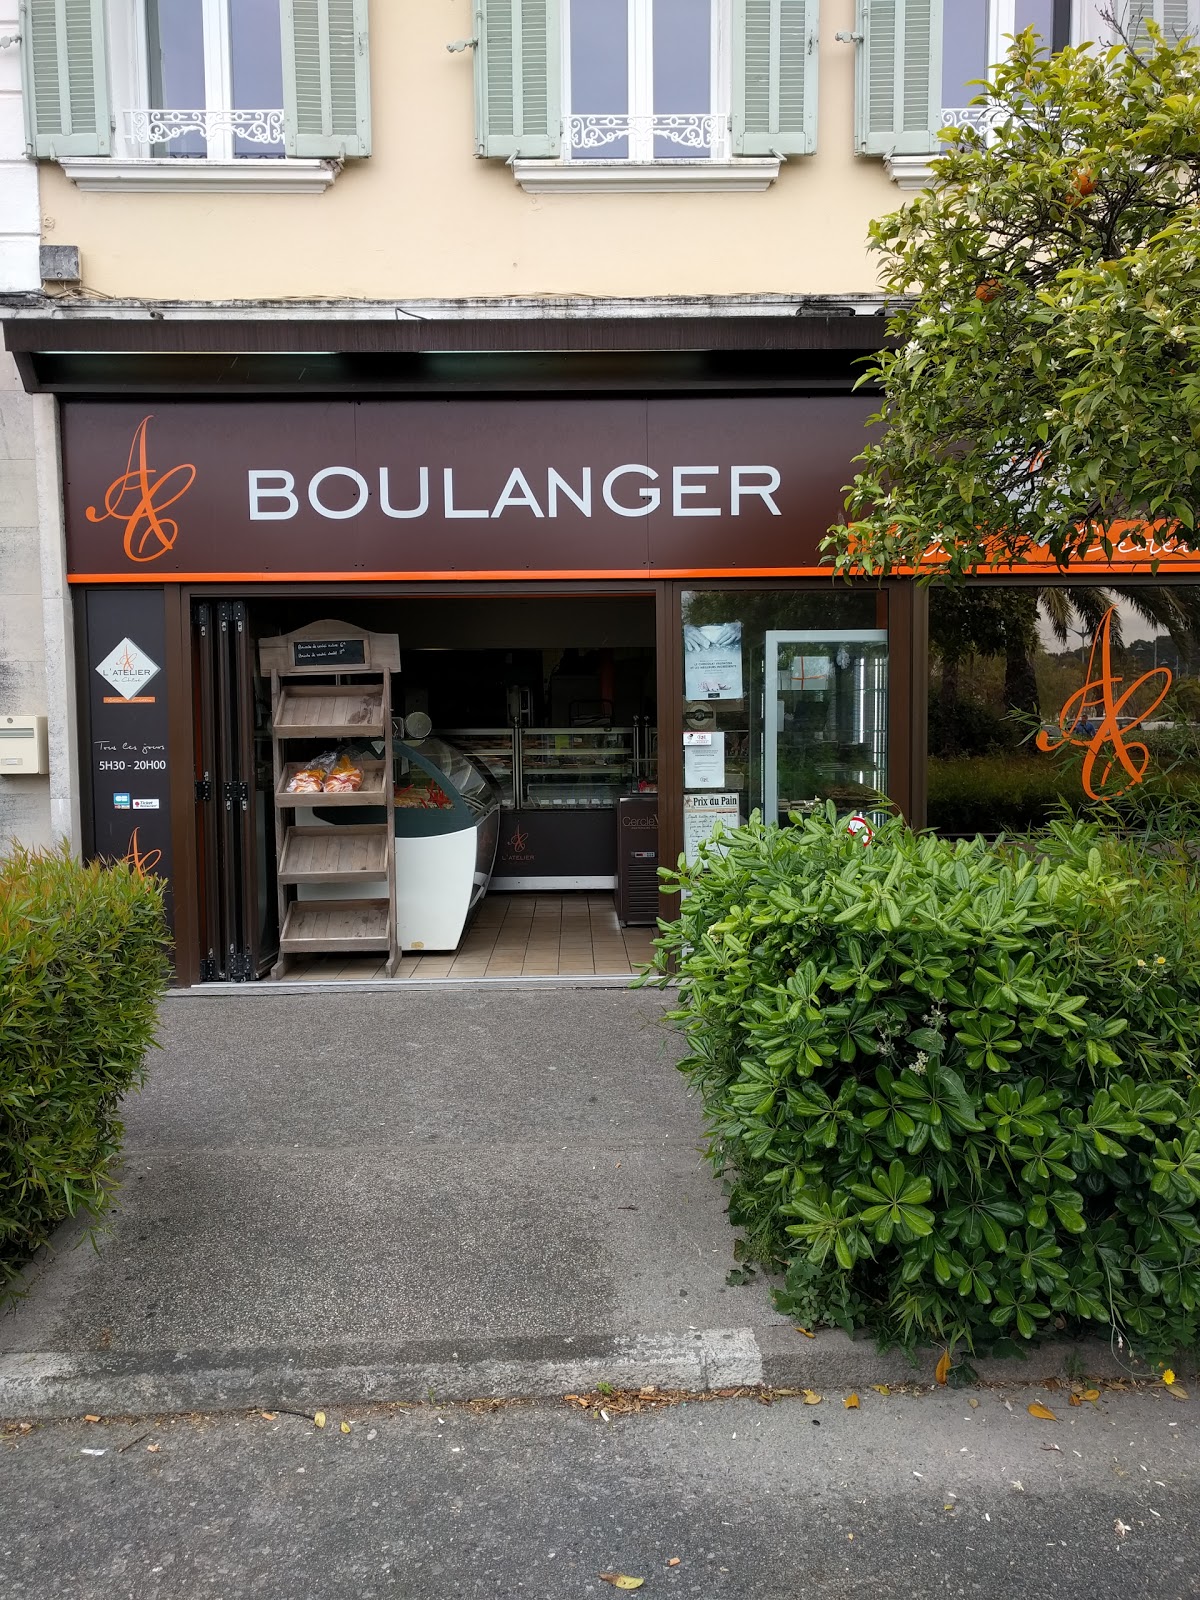 L'Atelier de Chloé, Boulanger Patissier